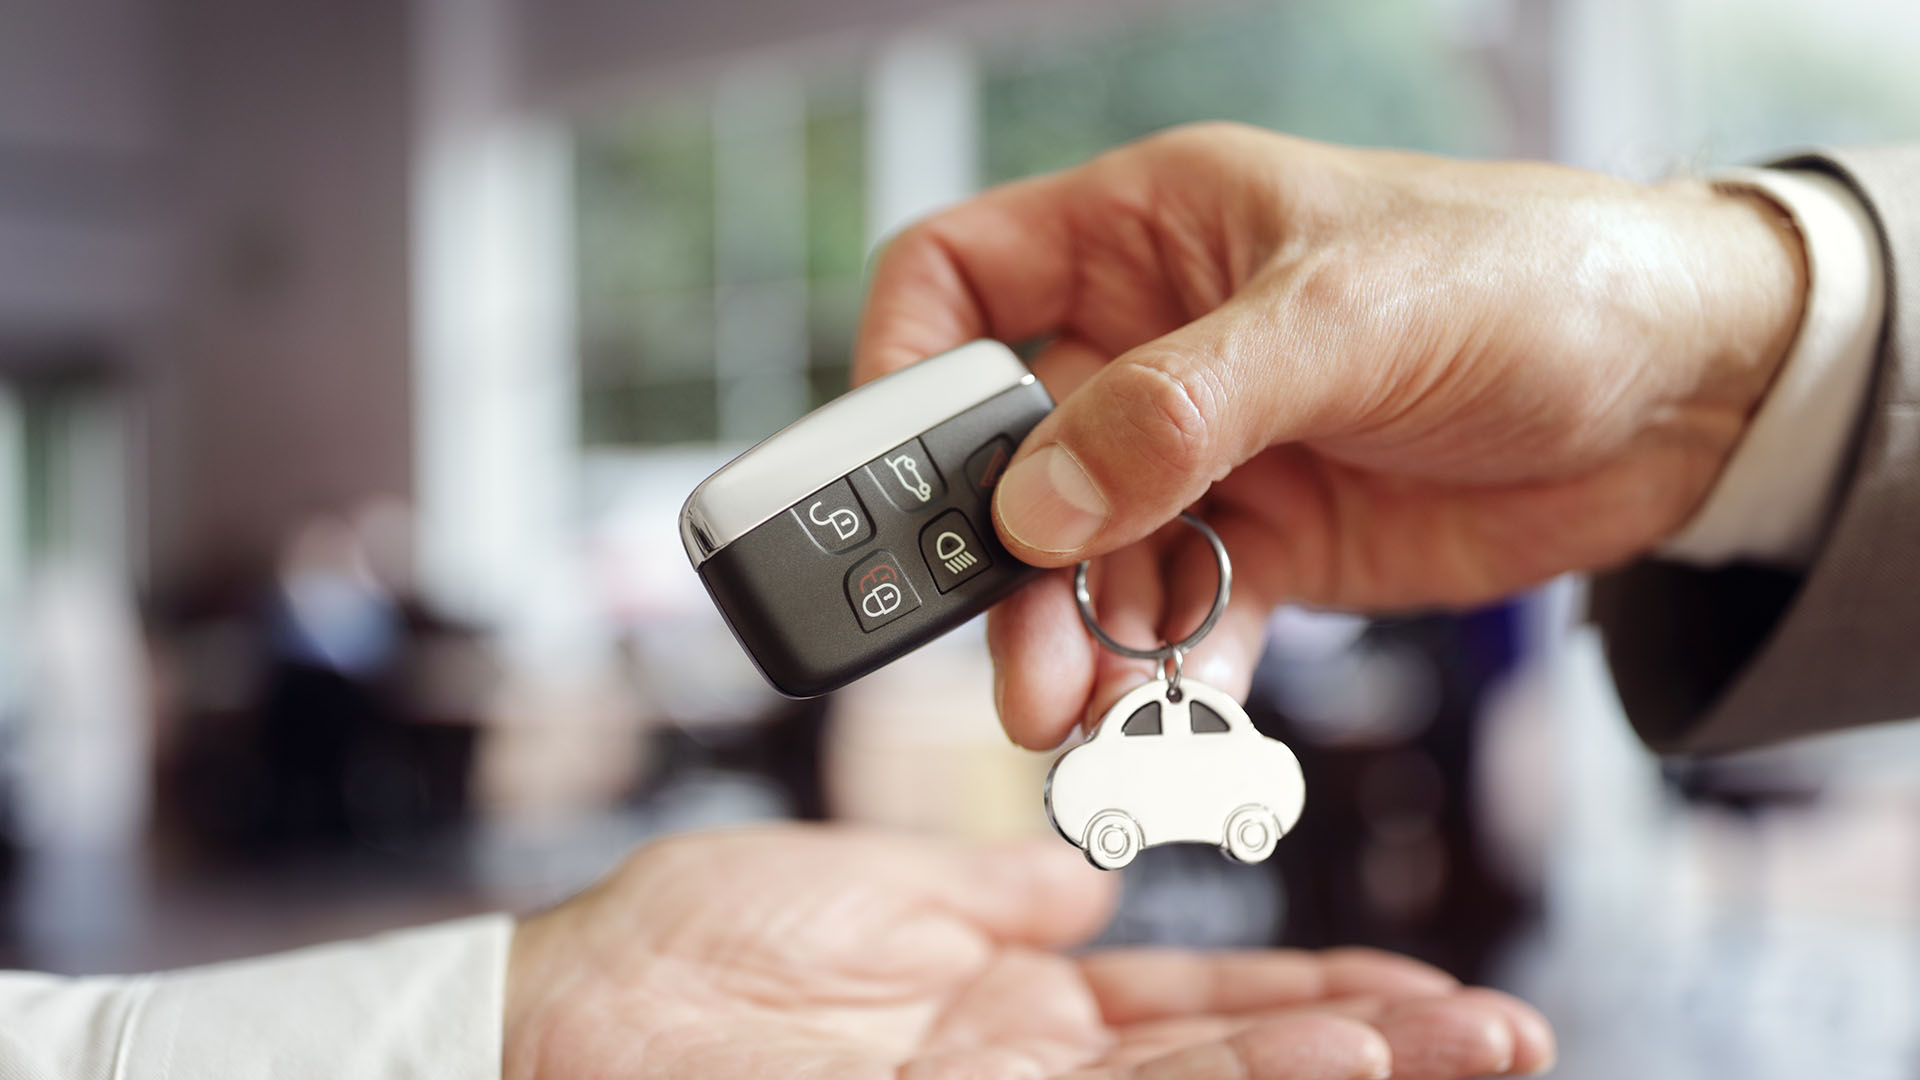 αγγελία - Car sales buying a new car handing over the keys